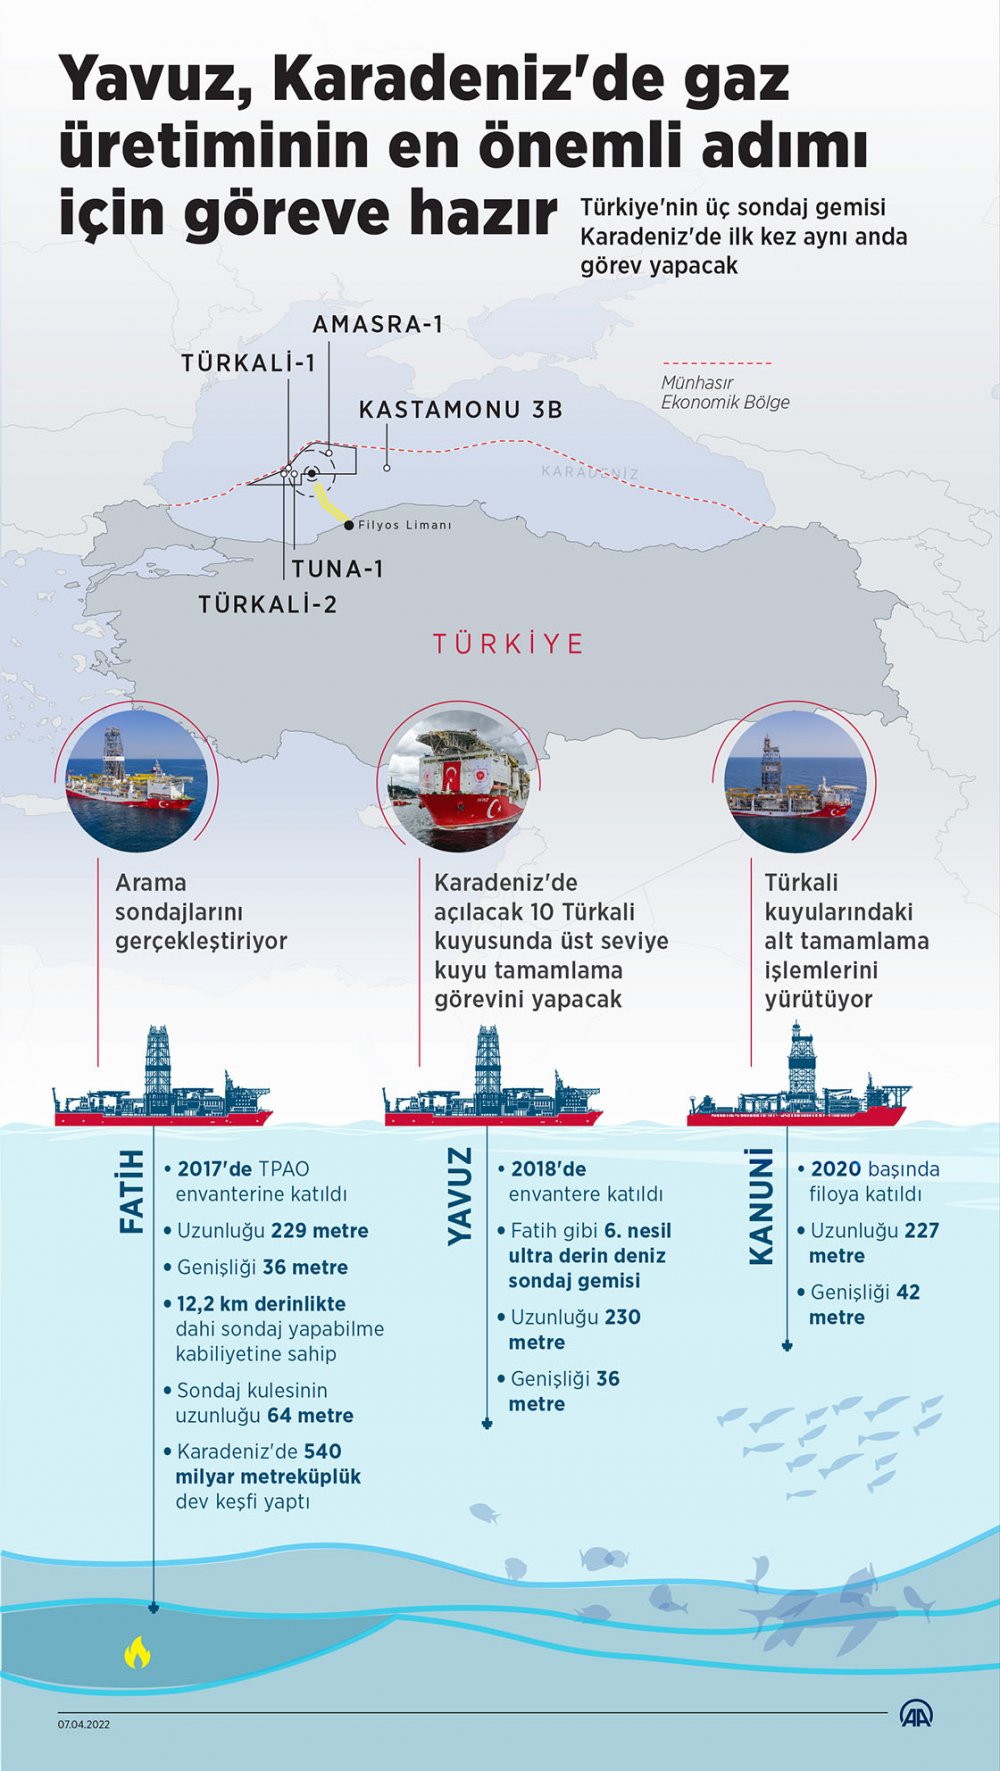 Yavuz, Karadeniz'de en önemli adım için uğurlanacak